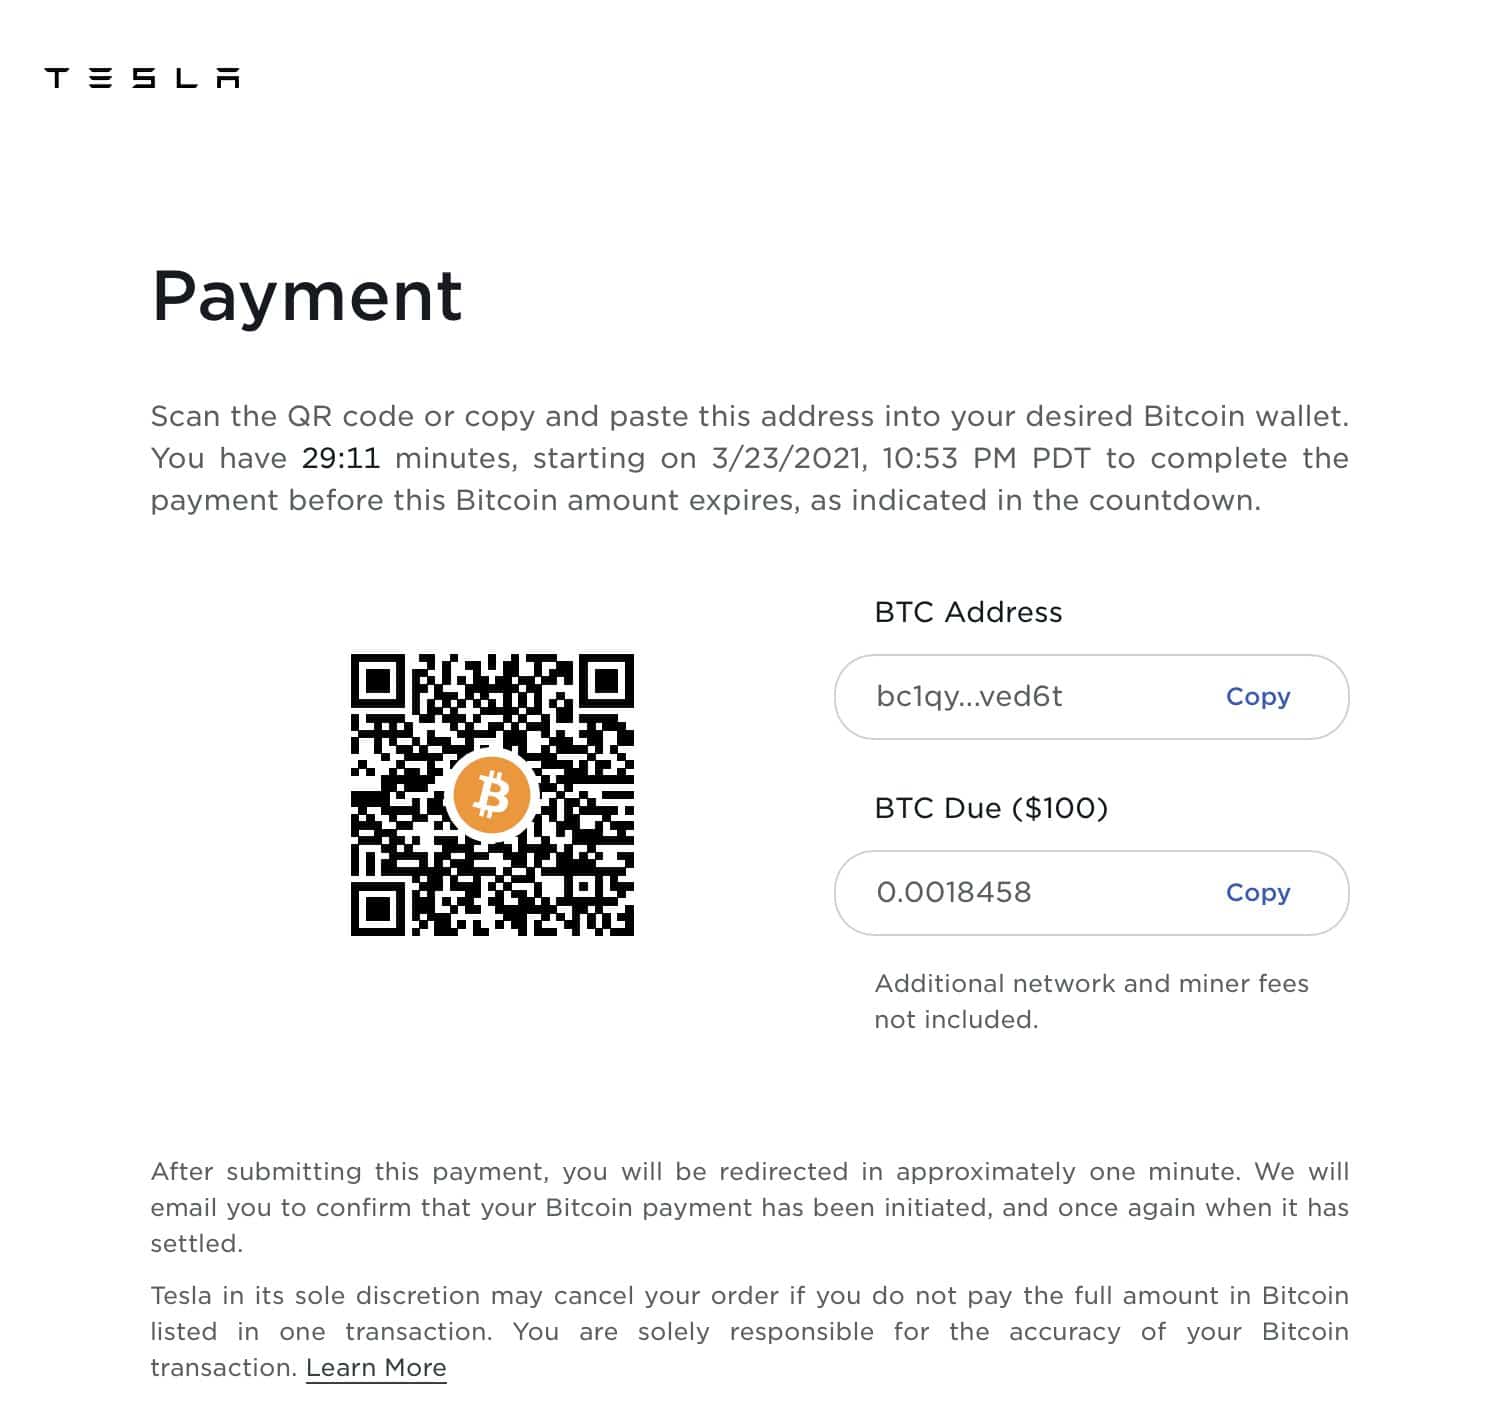 Tesla Payment